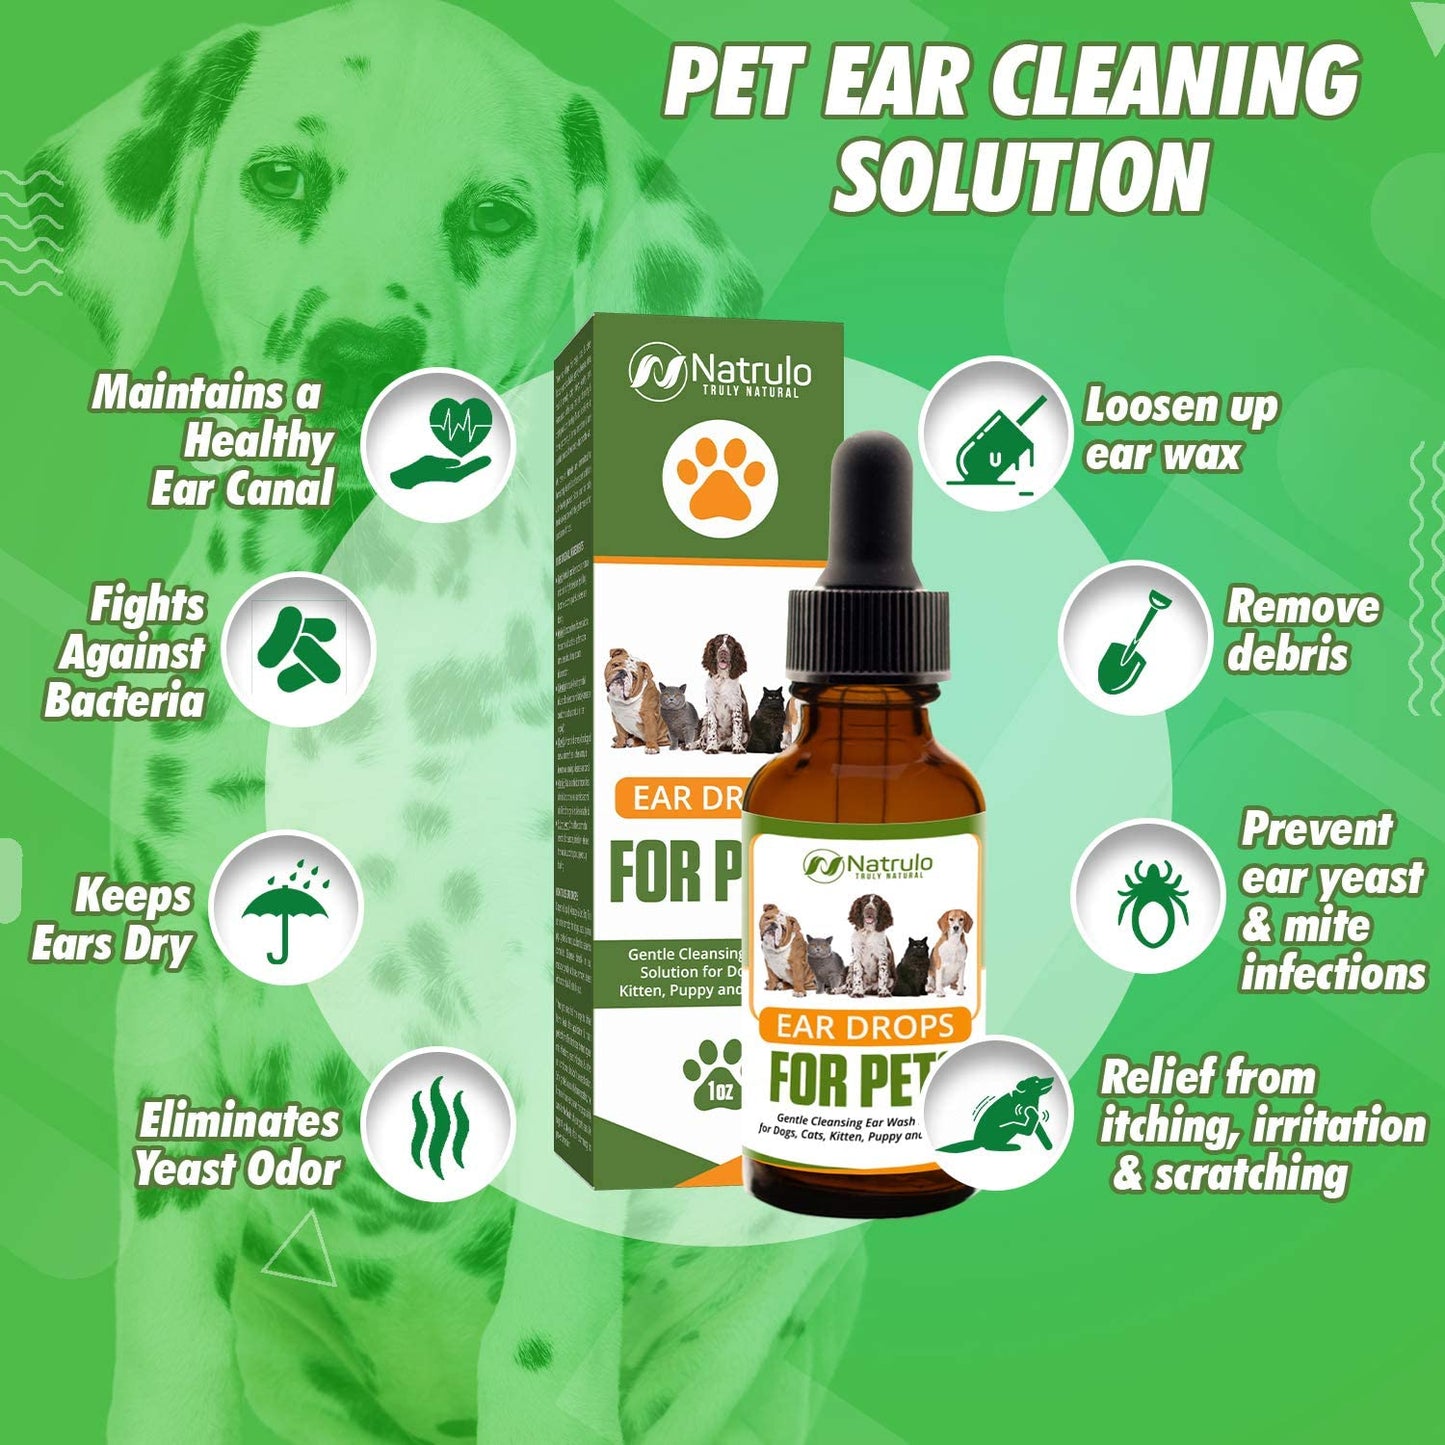 Pet Ear Drops